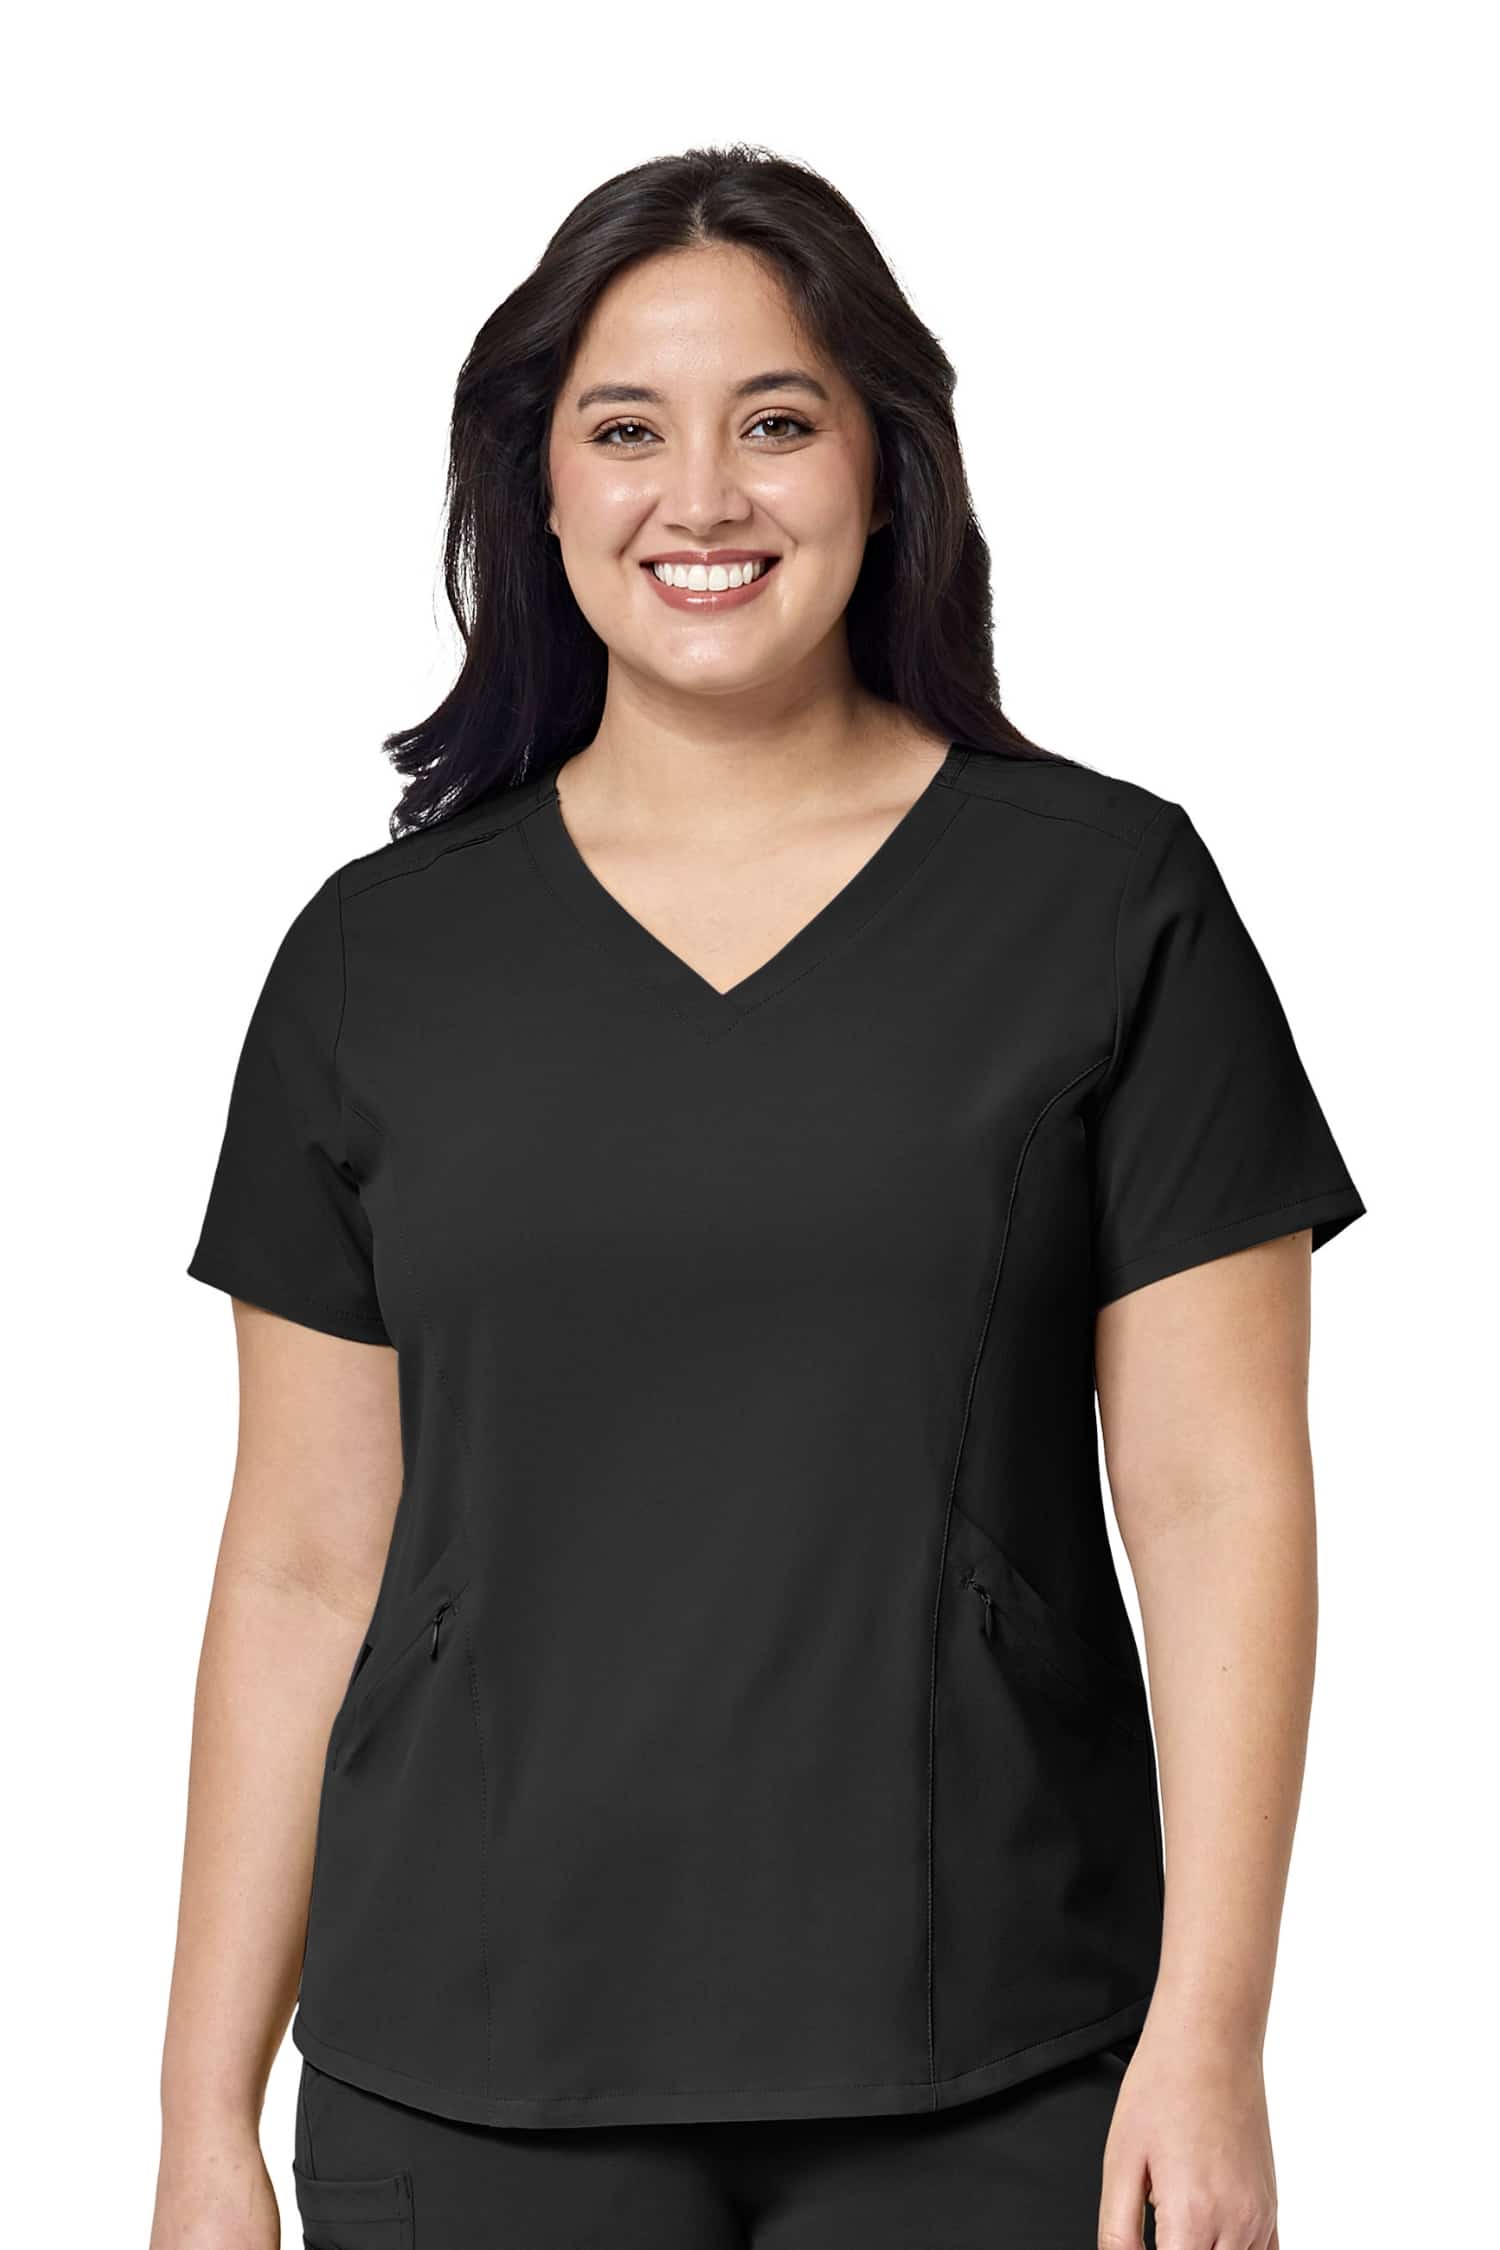 Femme en tunique médicale noire Renew en polyester spandex, idéale pour tenues médicales